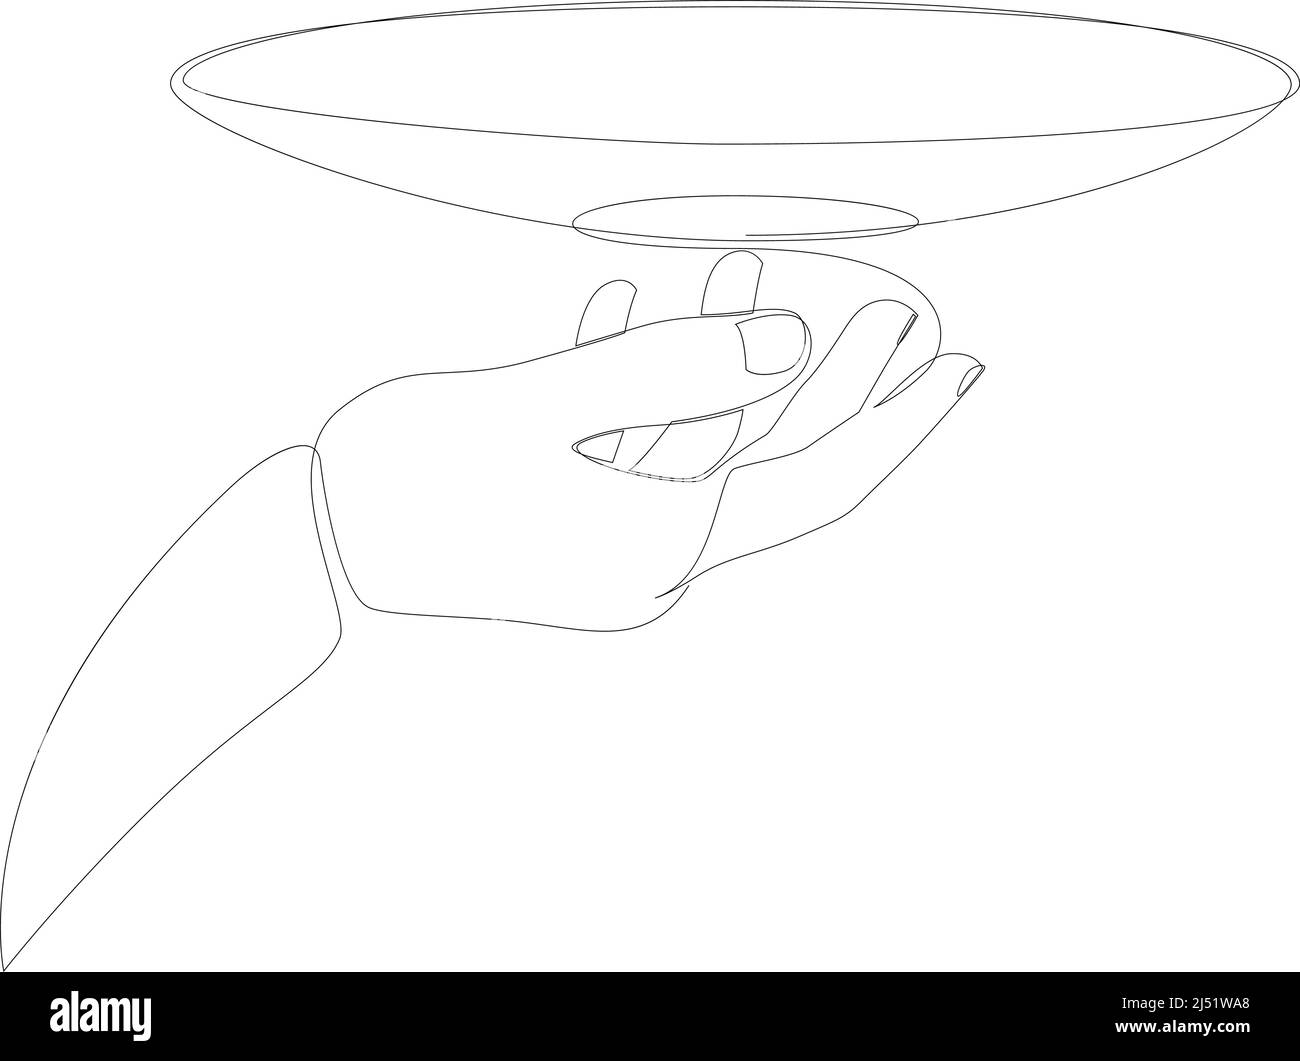 Disegno a linea continua di una mano che tiene una piastra. Illustrazione  vettoriale Immagine e Vettoriale - Alamy